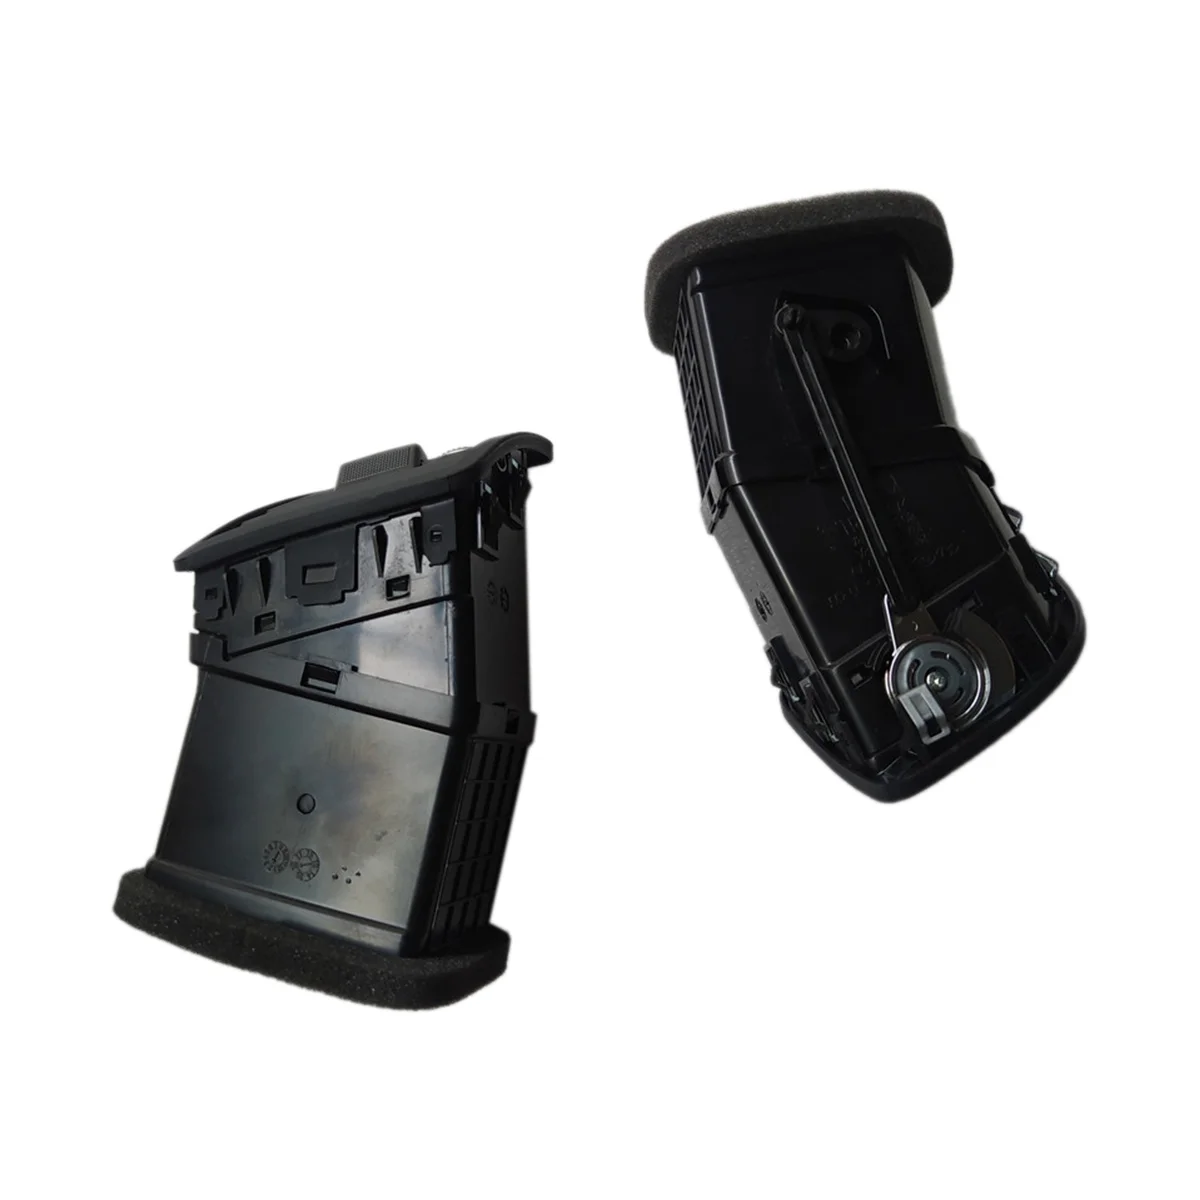 

Автомобильная решетка для воздуховыпускного отверстия на приборной панели для Kia Sportage 2005-2009 974801F000 974901F000